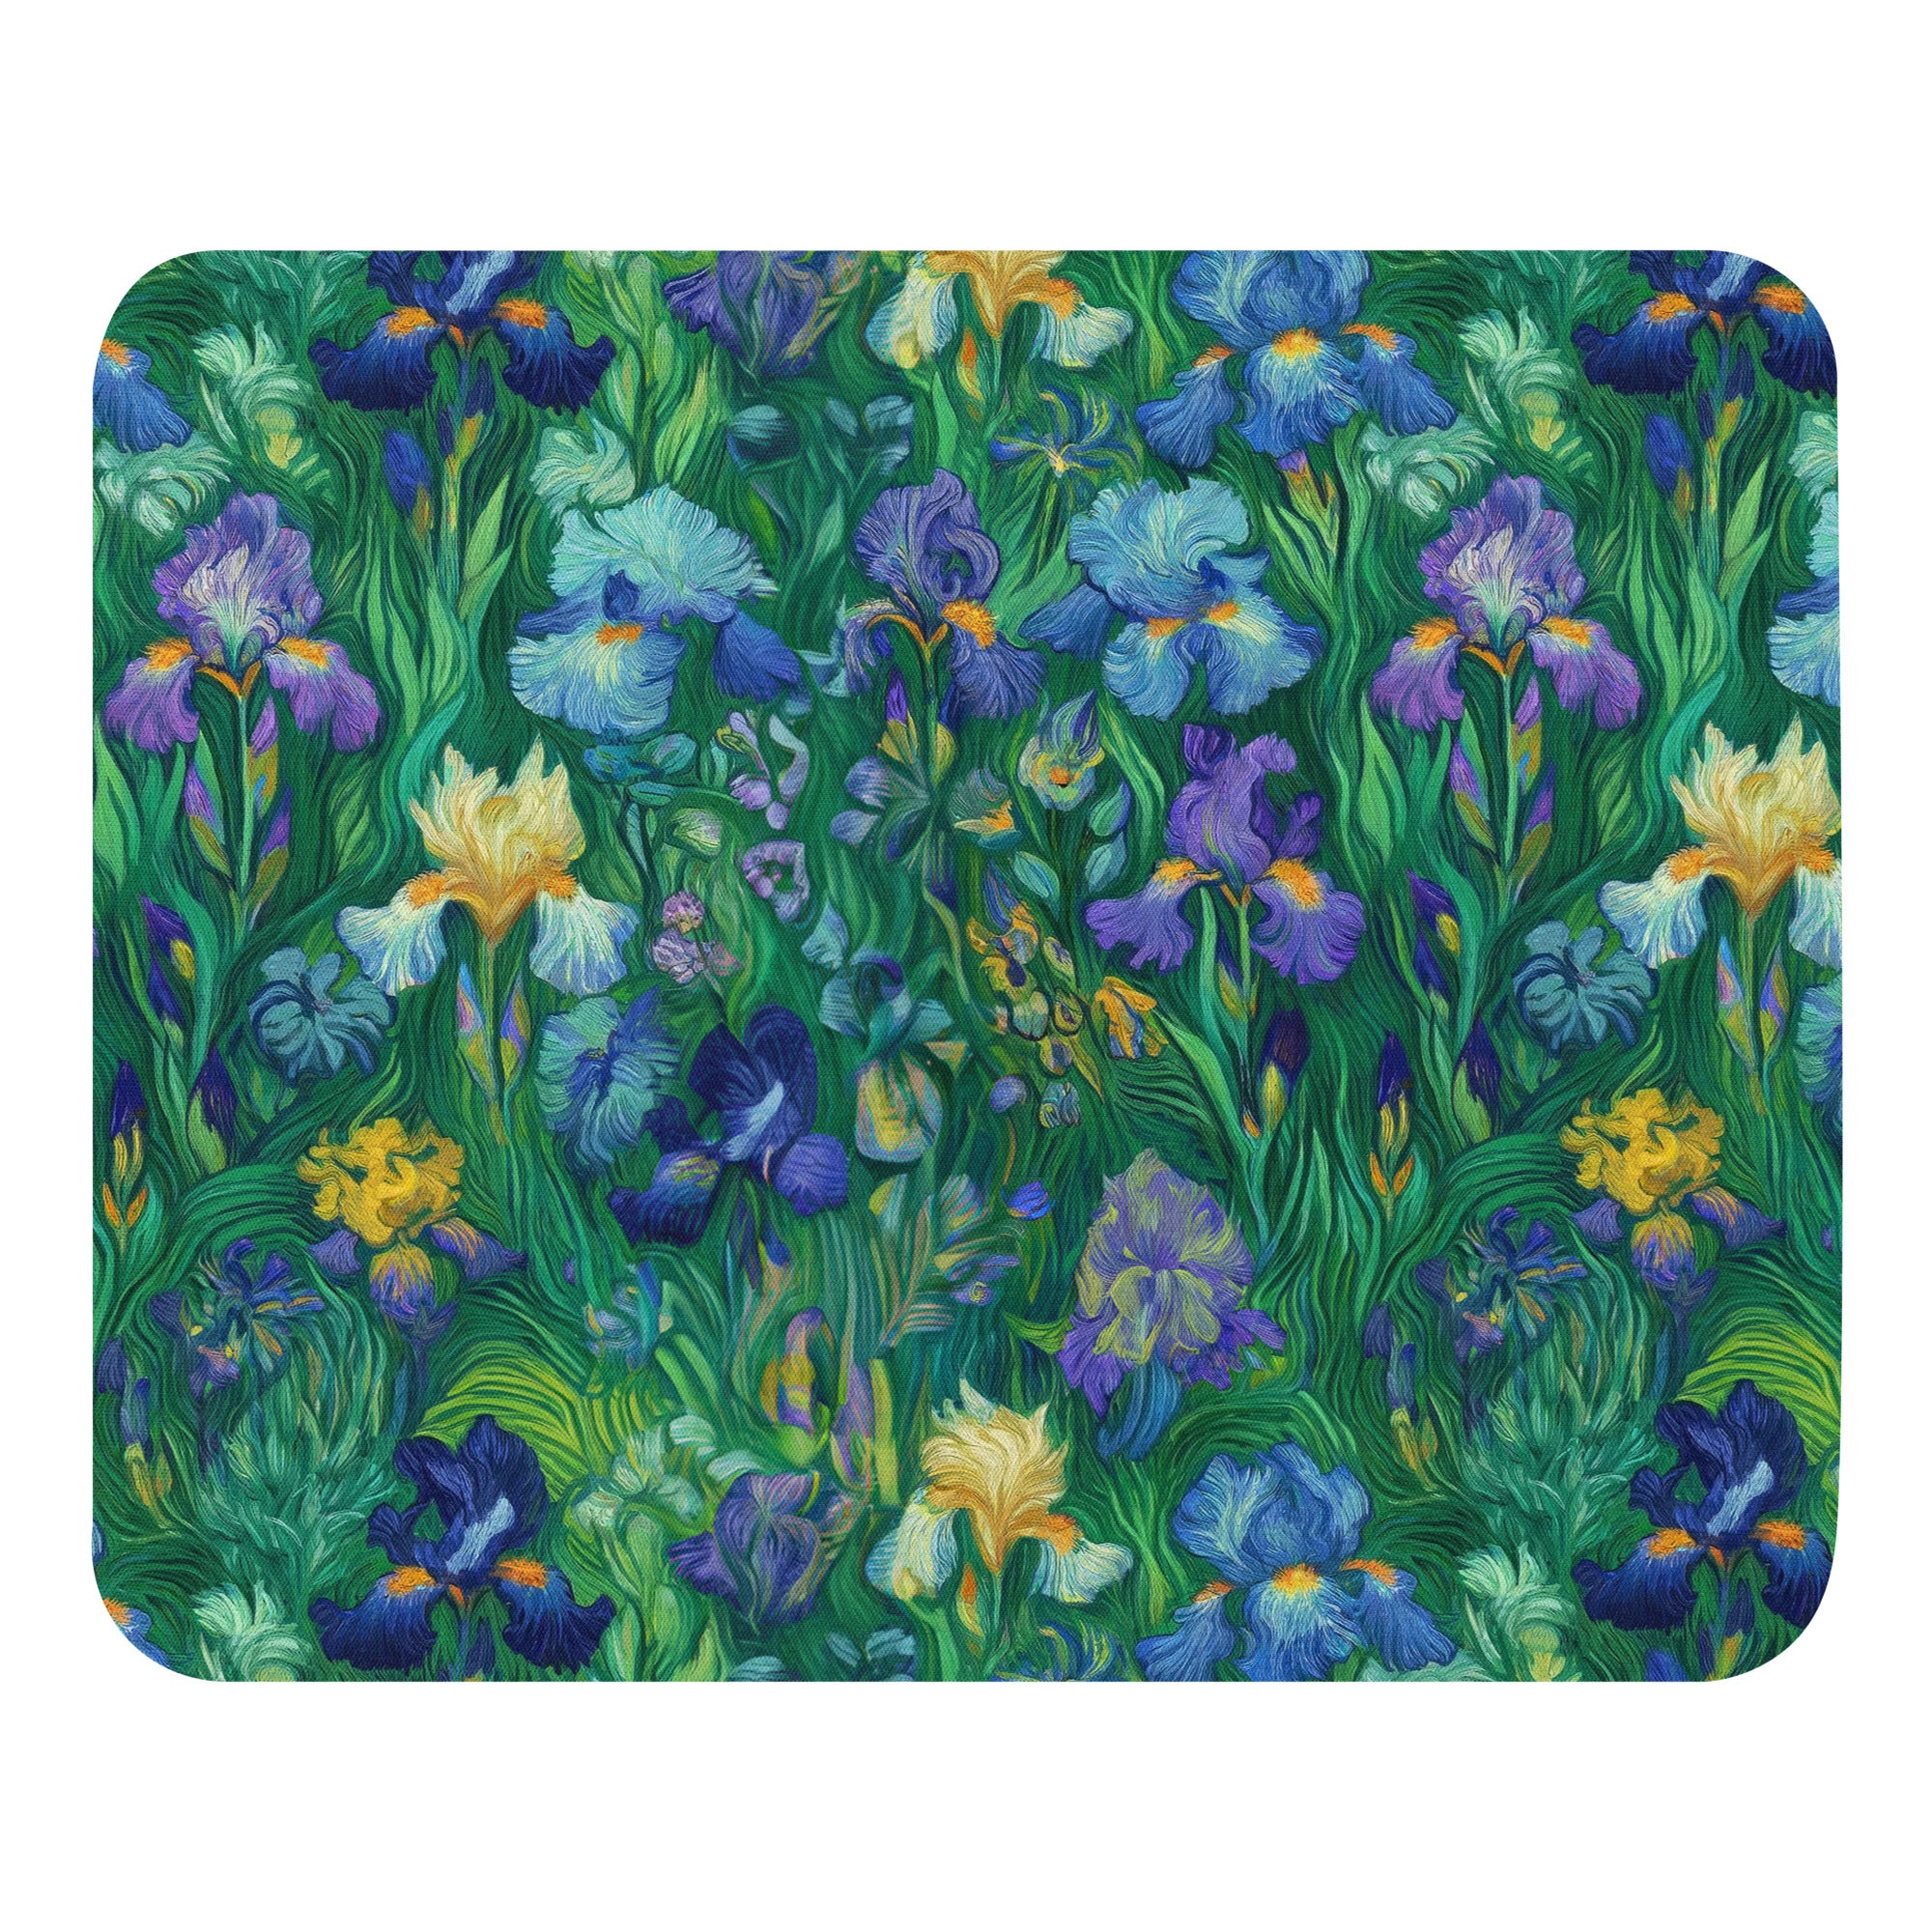 Vincent van Gogh 'Irises' Famous Painting Mouse Pad | Premium Art Mouse Pad